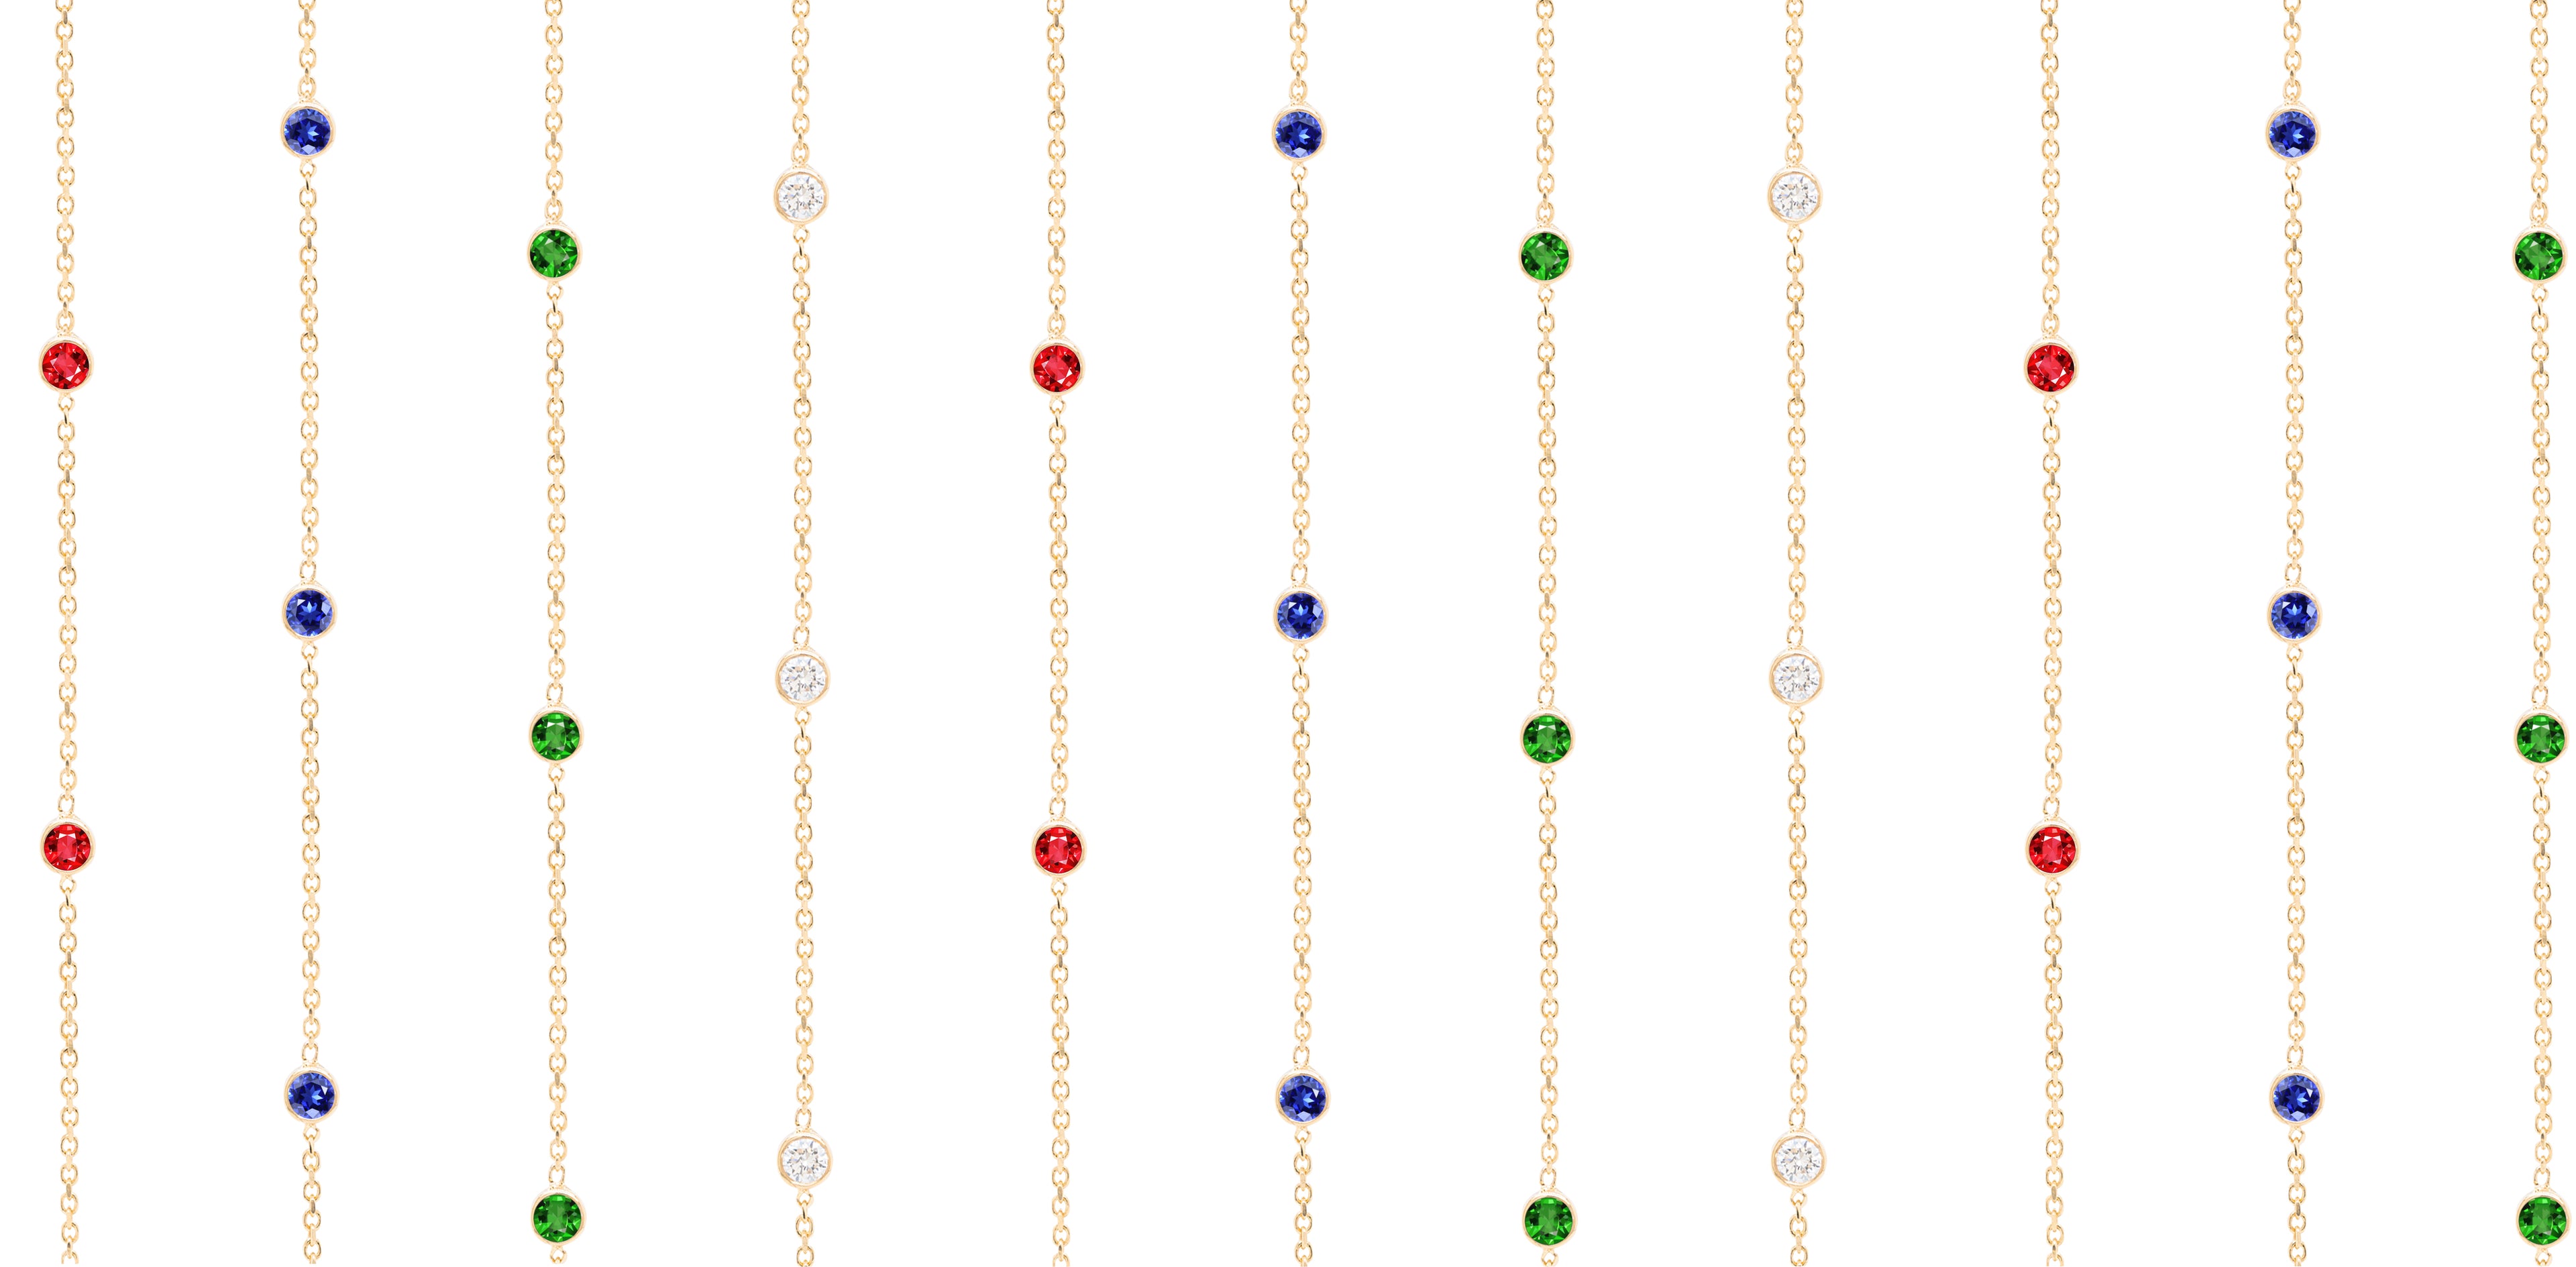 Tobi Gem - Get in Touch background banner chains with gemstones 